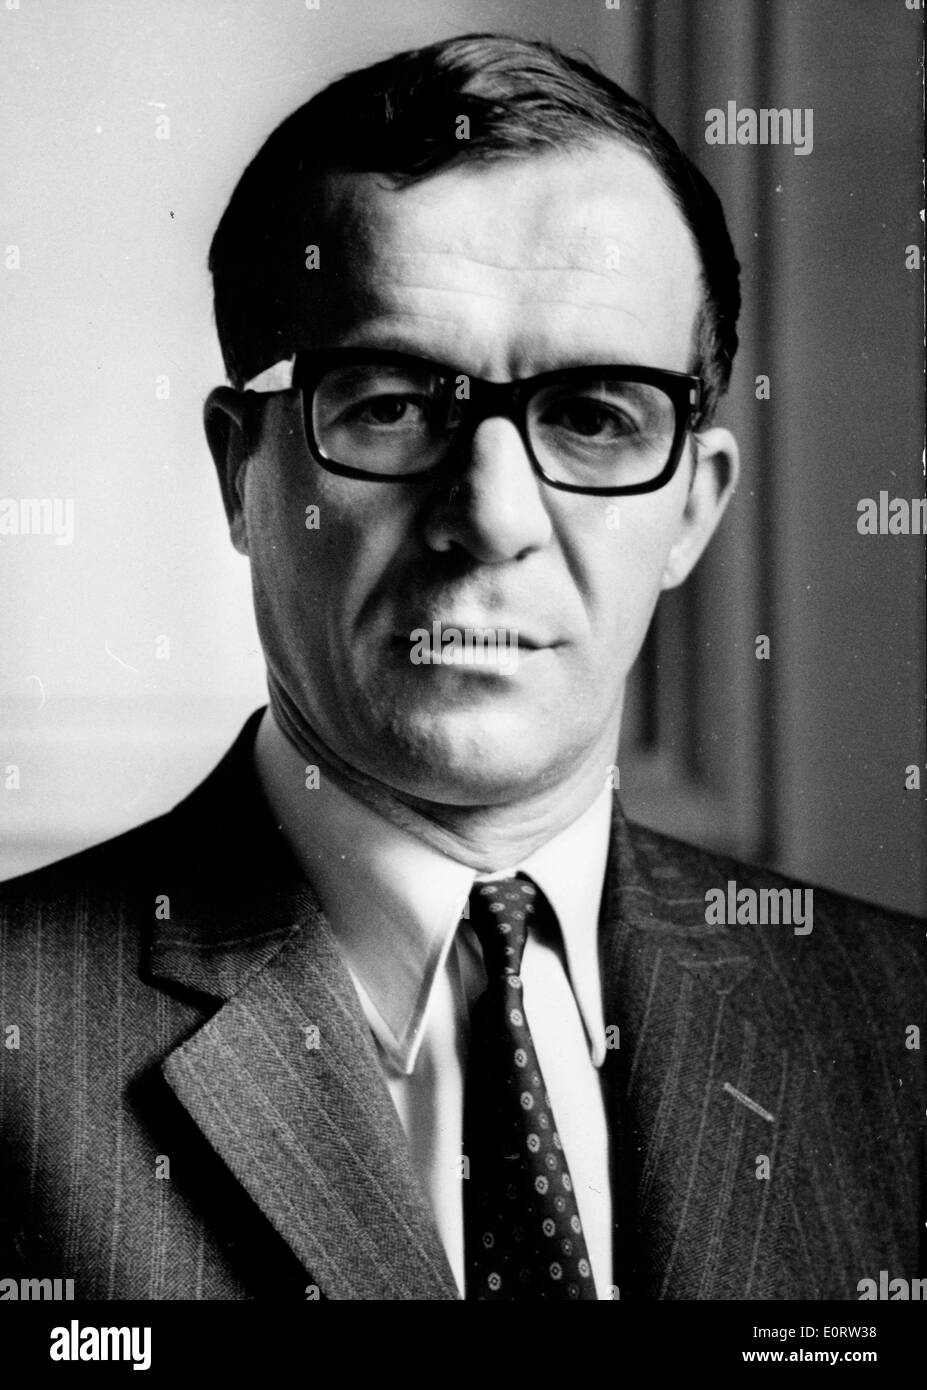 Portrait of politician Andre Fanton Stock Photo